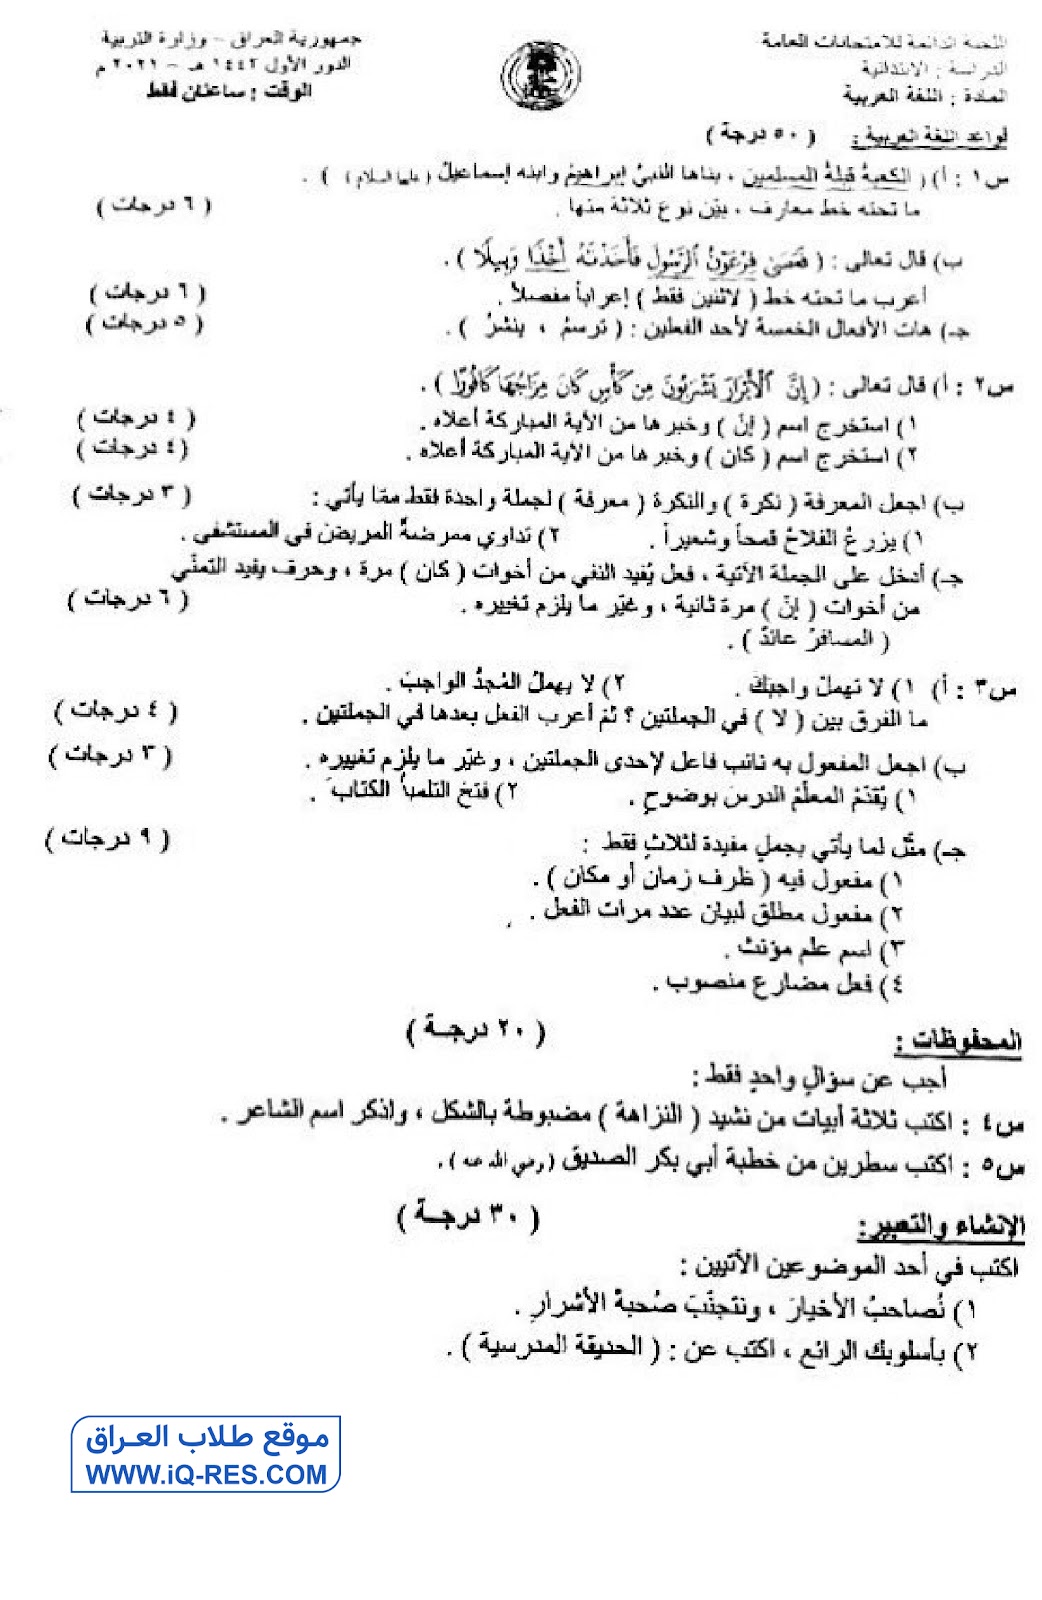 اسئلة اللغة العربية الدور الاول للصف السادس الابتدائي 2021 مع الاجوبة %D8%B9%D8%B1%D8%A8%D9%8A-1